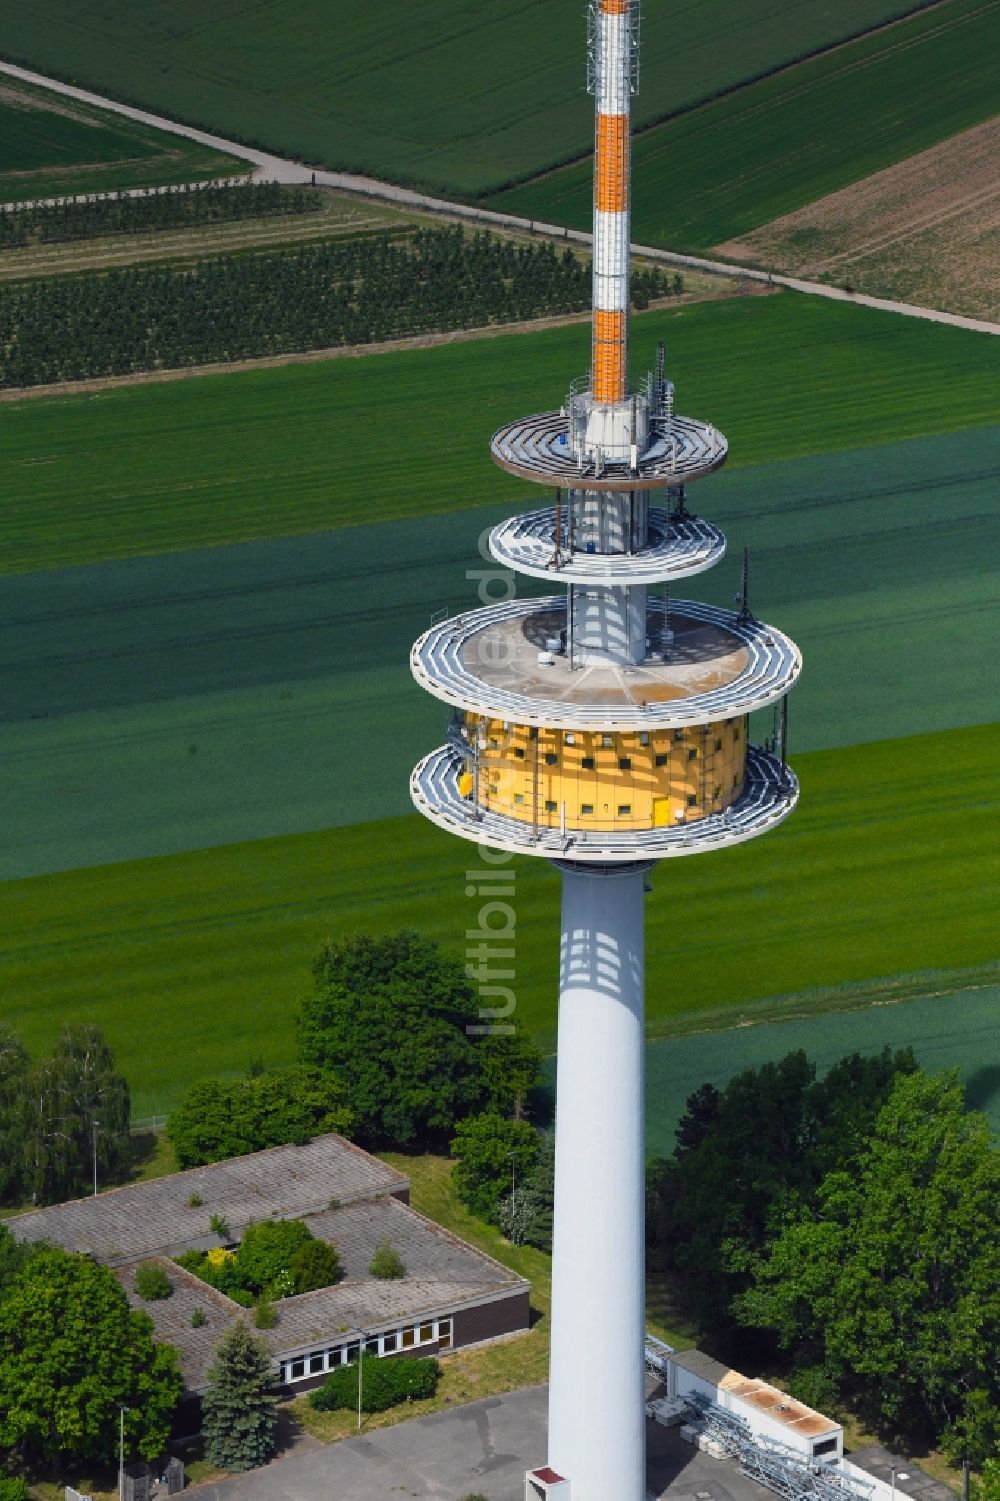 Ober-Olm von oben - Fernmeldeturm und Fernsehturm in Ober-Olm im Bundesland Rheinland-Pfalz, Deutschland